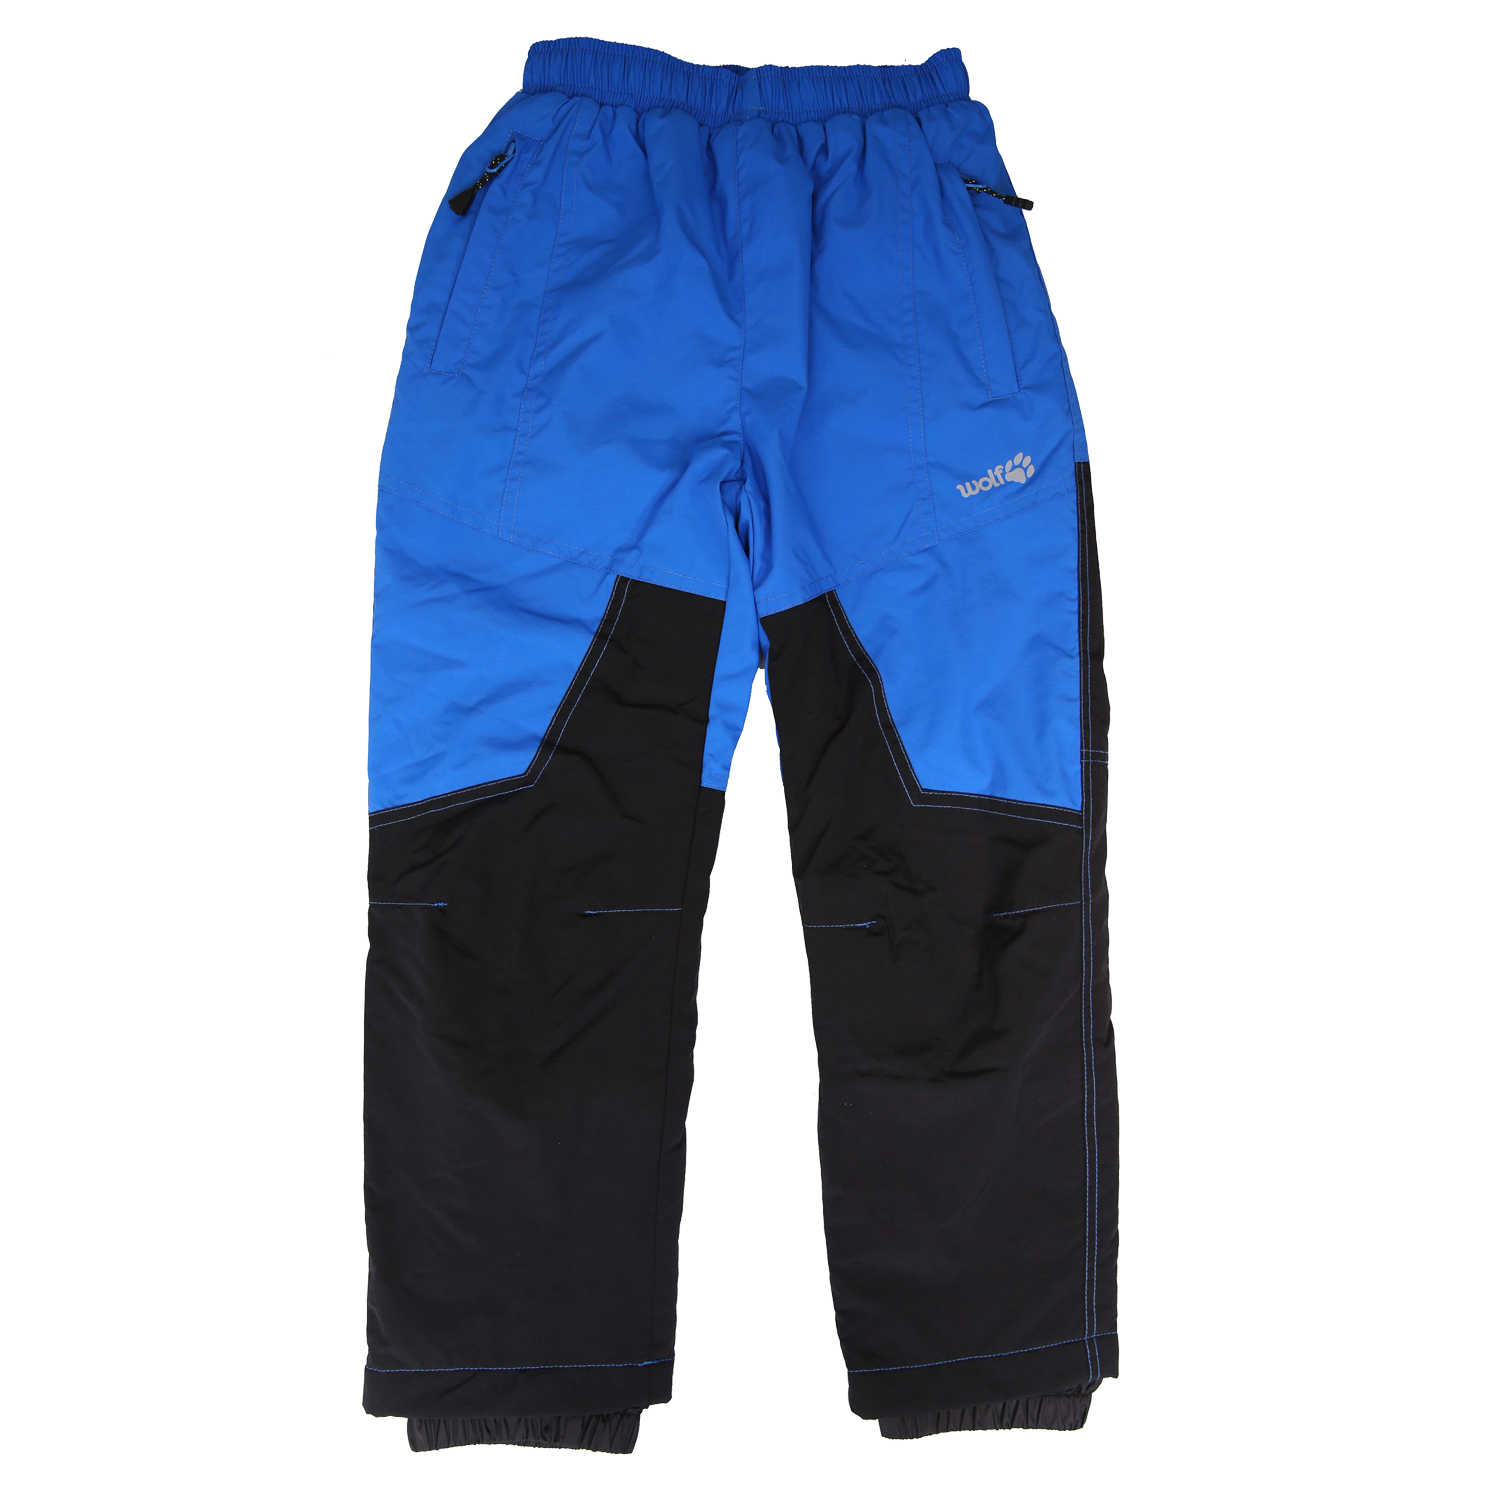 Chlapecké šusťákové kalhoty, zateplené - Wolf B2174, modrá/ černá Barva: Modrá, Velikost: 104